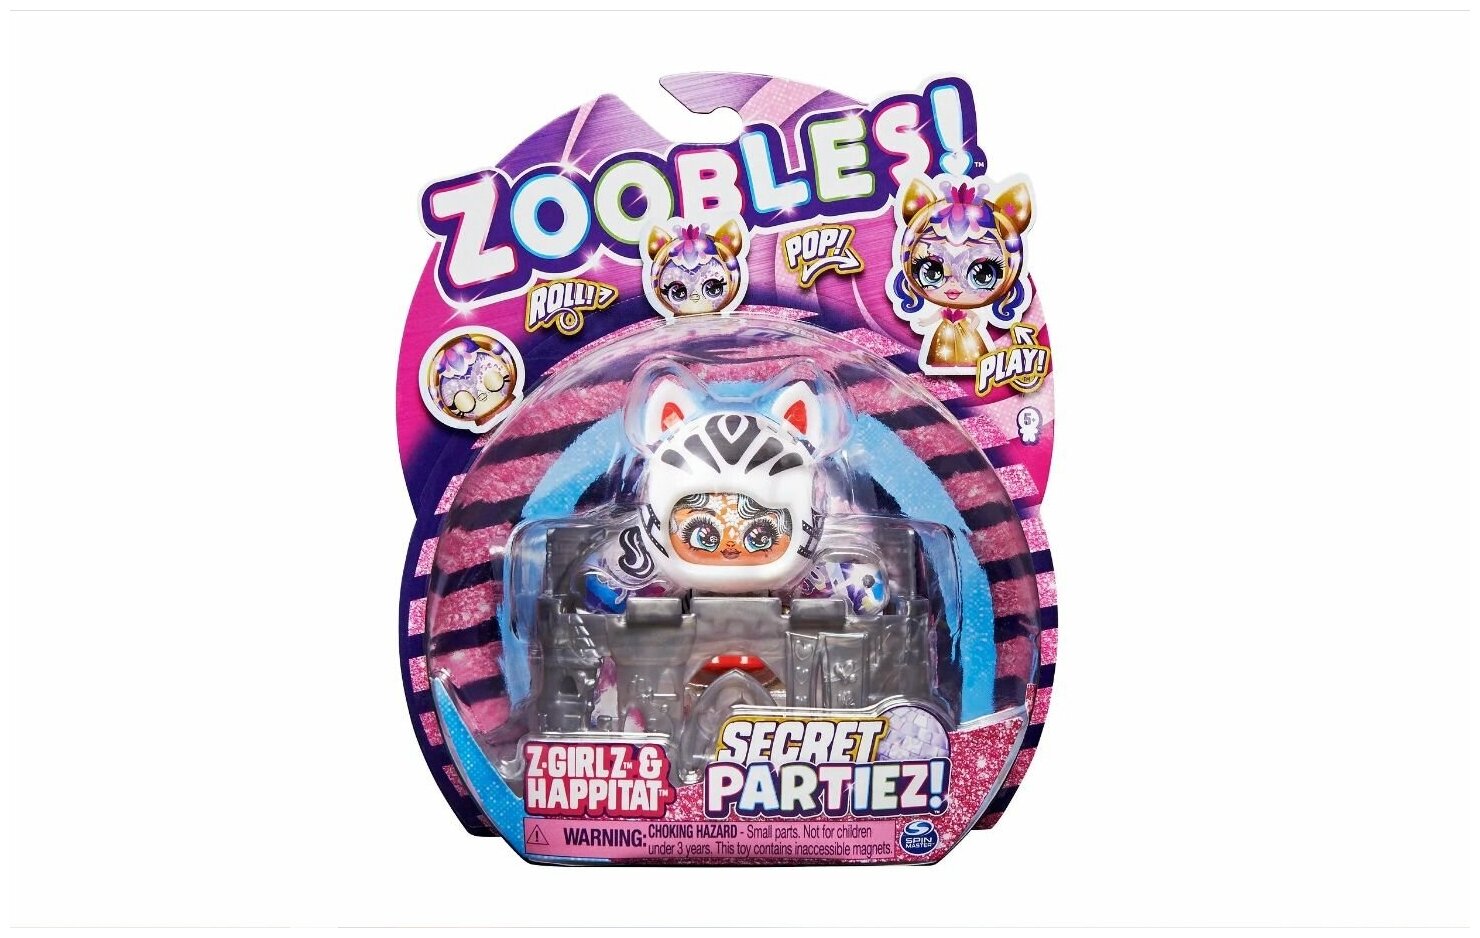 Zoobles Игровой набор Секретная вечеринка трансформирующийся Зебра 6061945/20137627